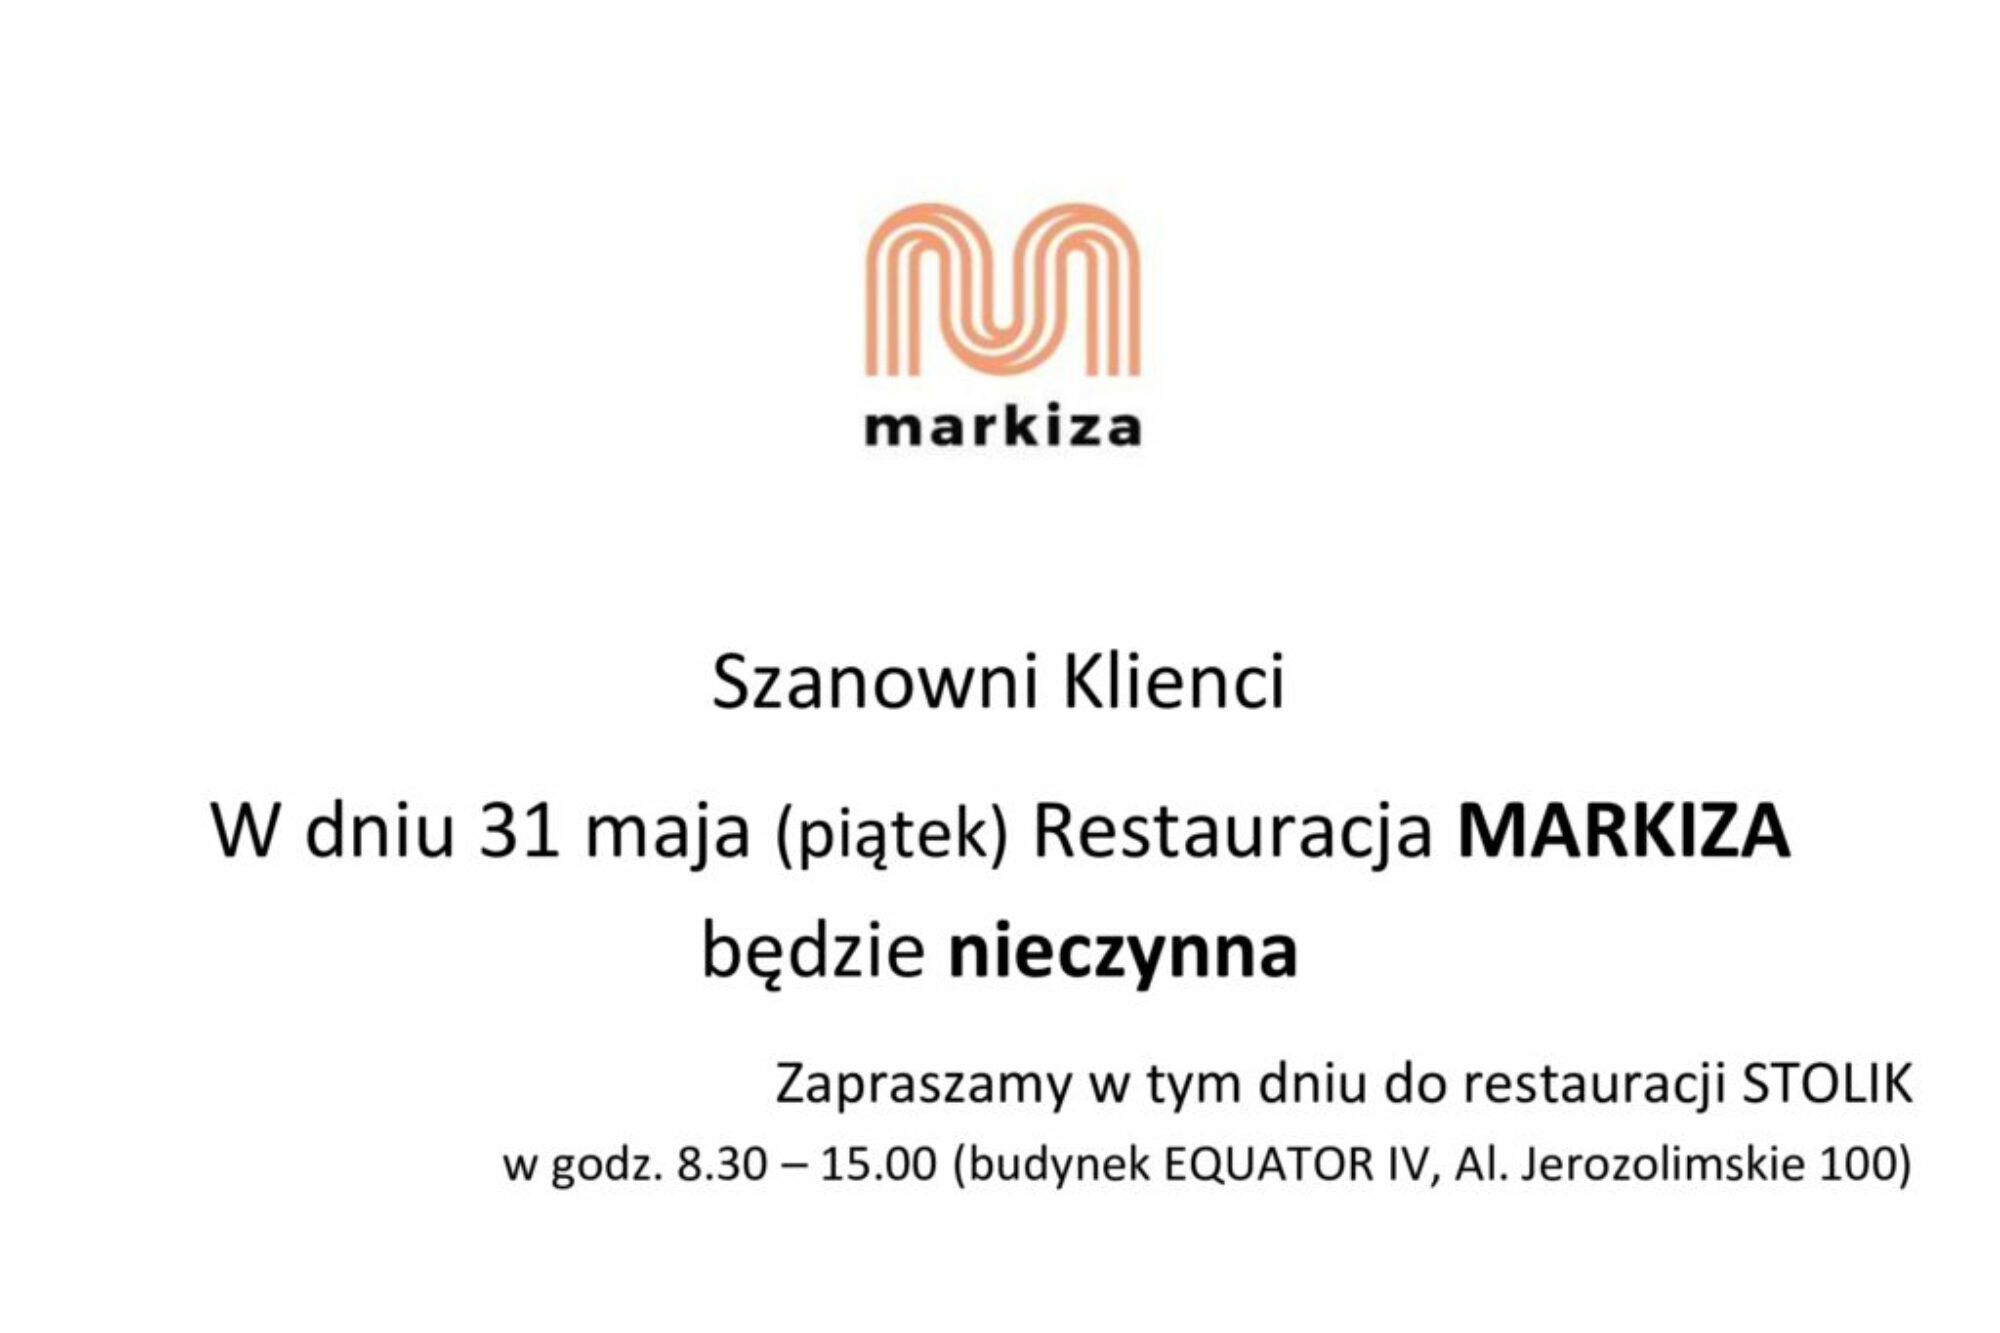 restauracja-nieczynna-_MARKIZA-31-maja-news (1)